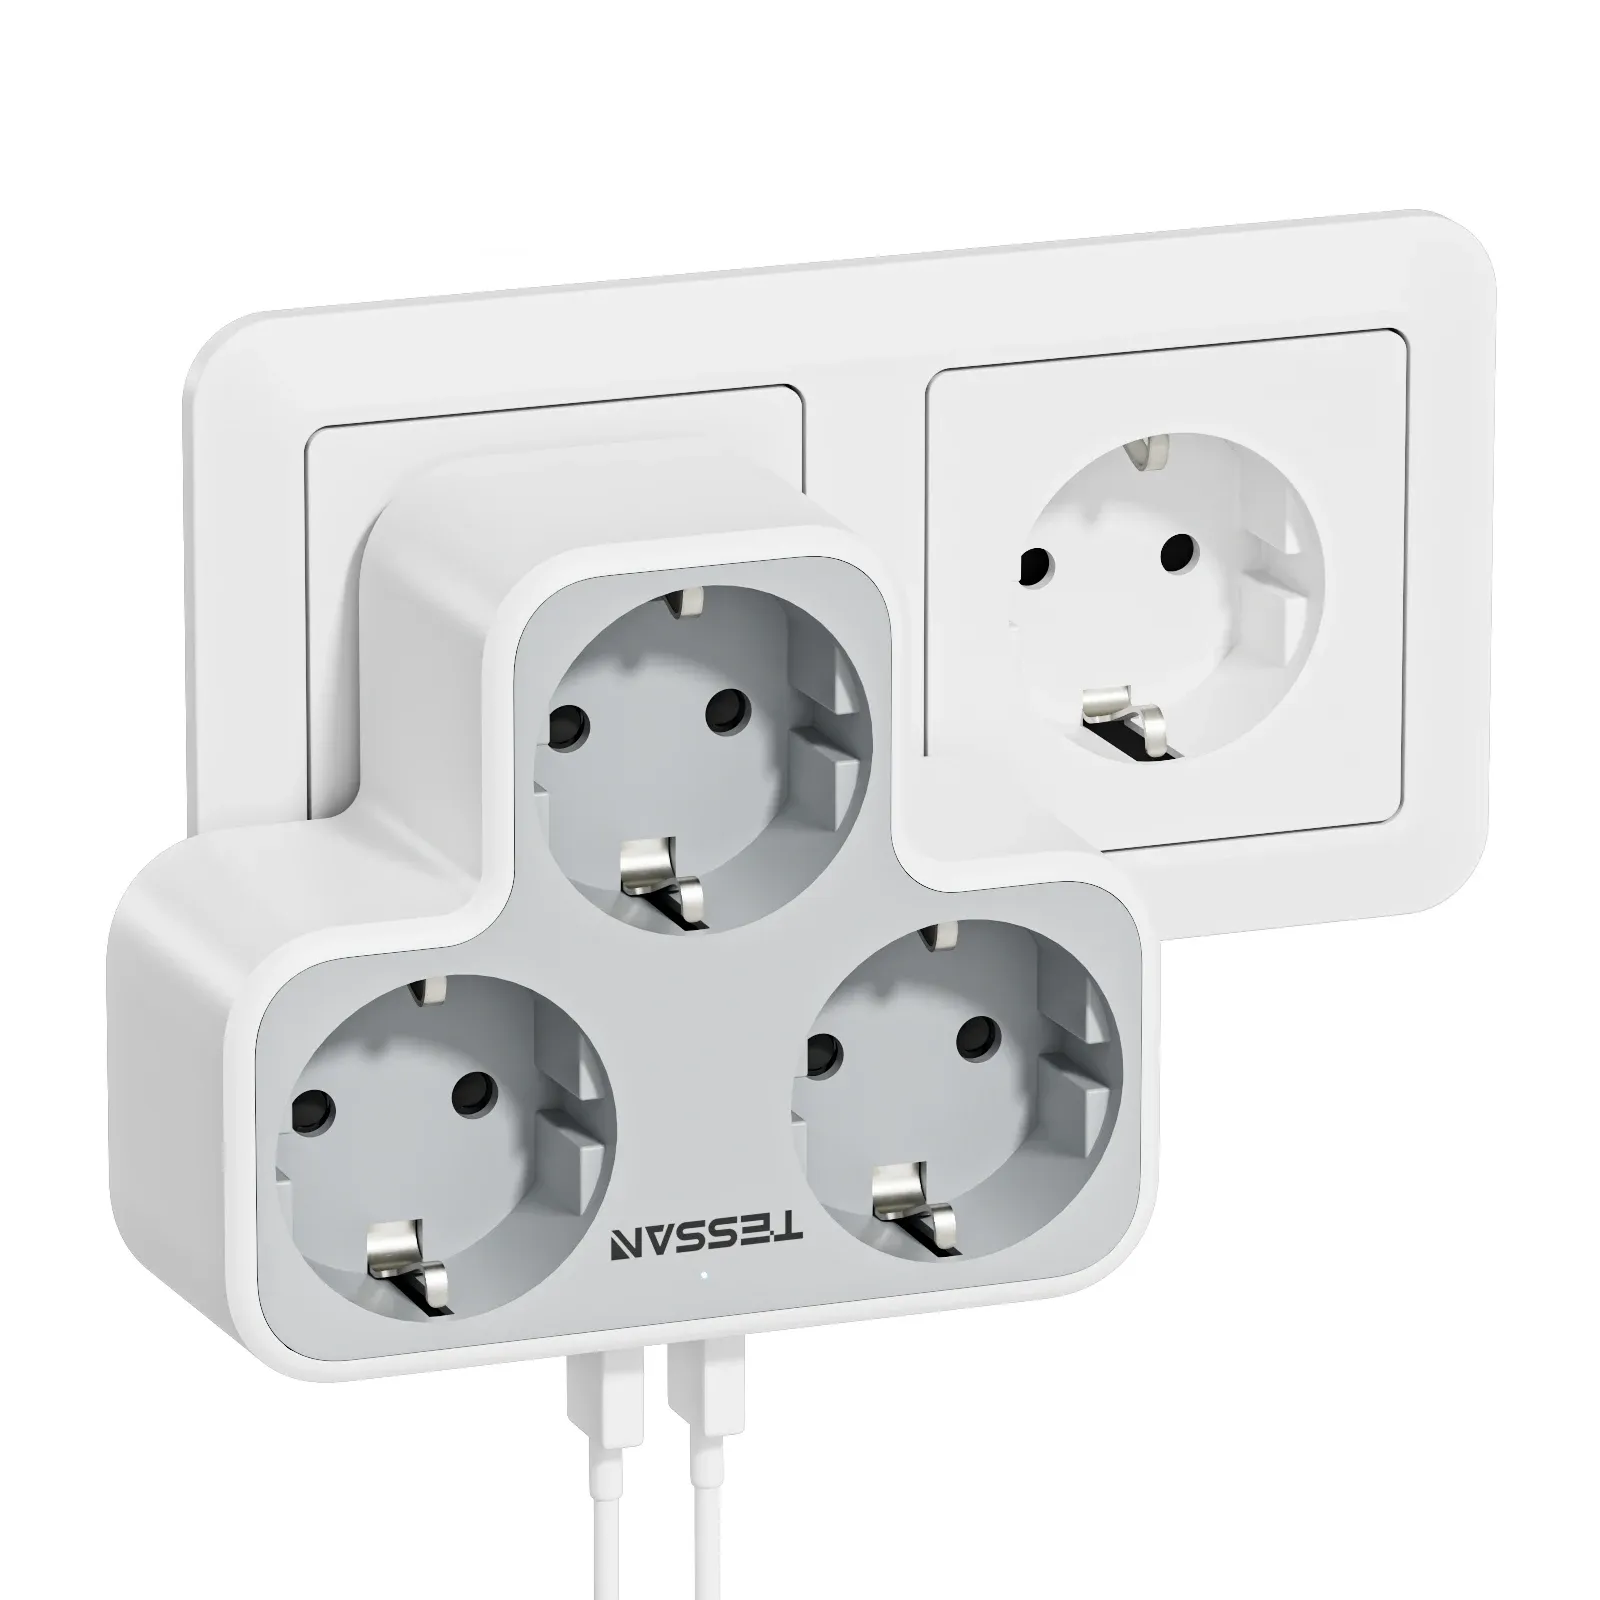 Adaptrar Tessan Multi Outlets Power Strip med utlopps USB -portar, EU KR Plug Wall Socket Power Adapter med överbelastningsskydd för hemmet